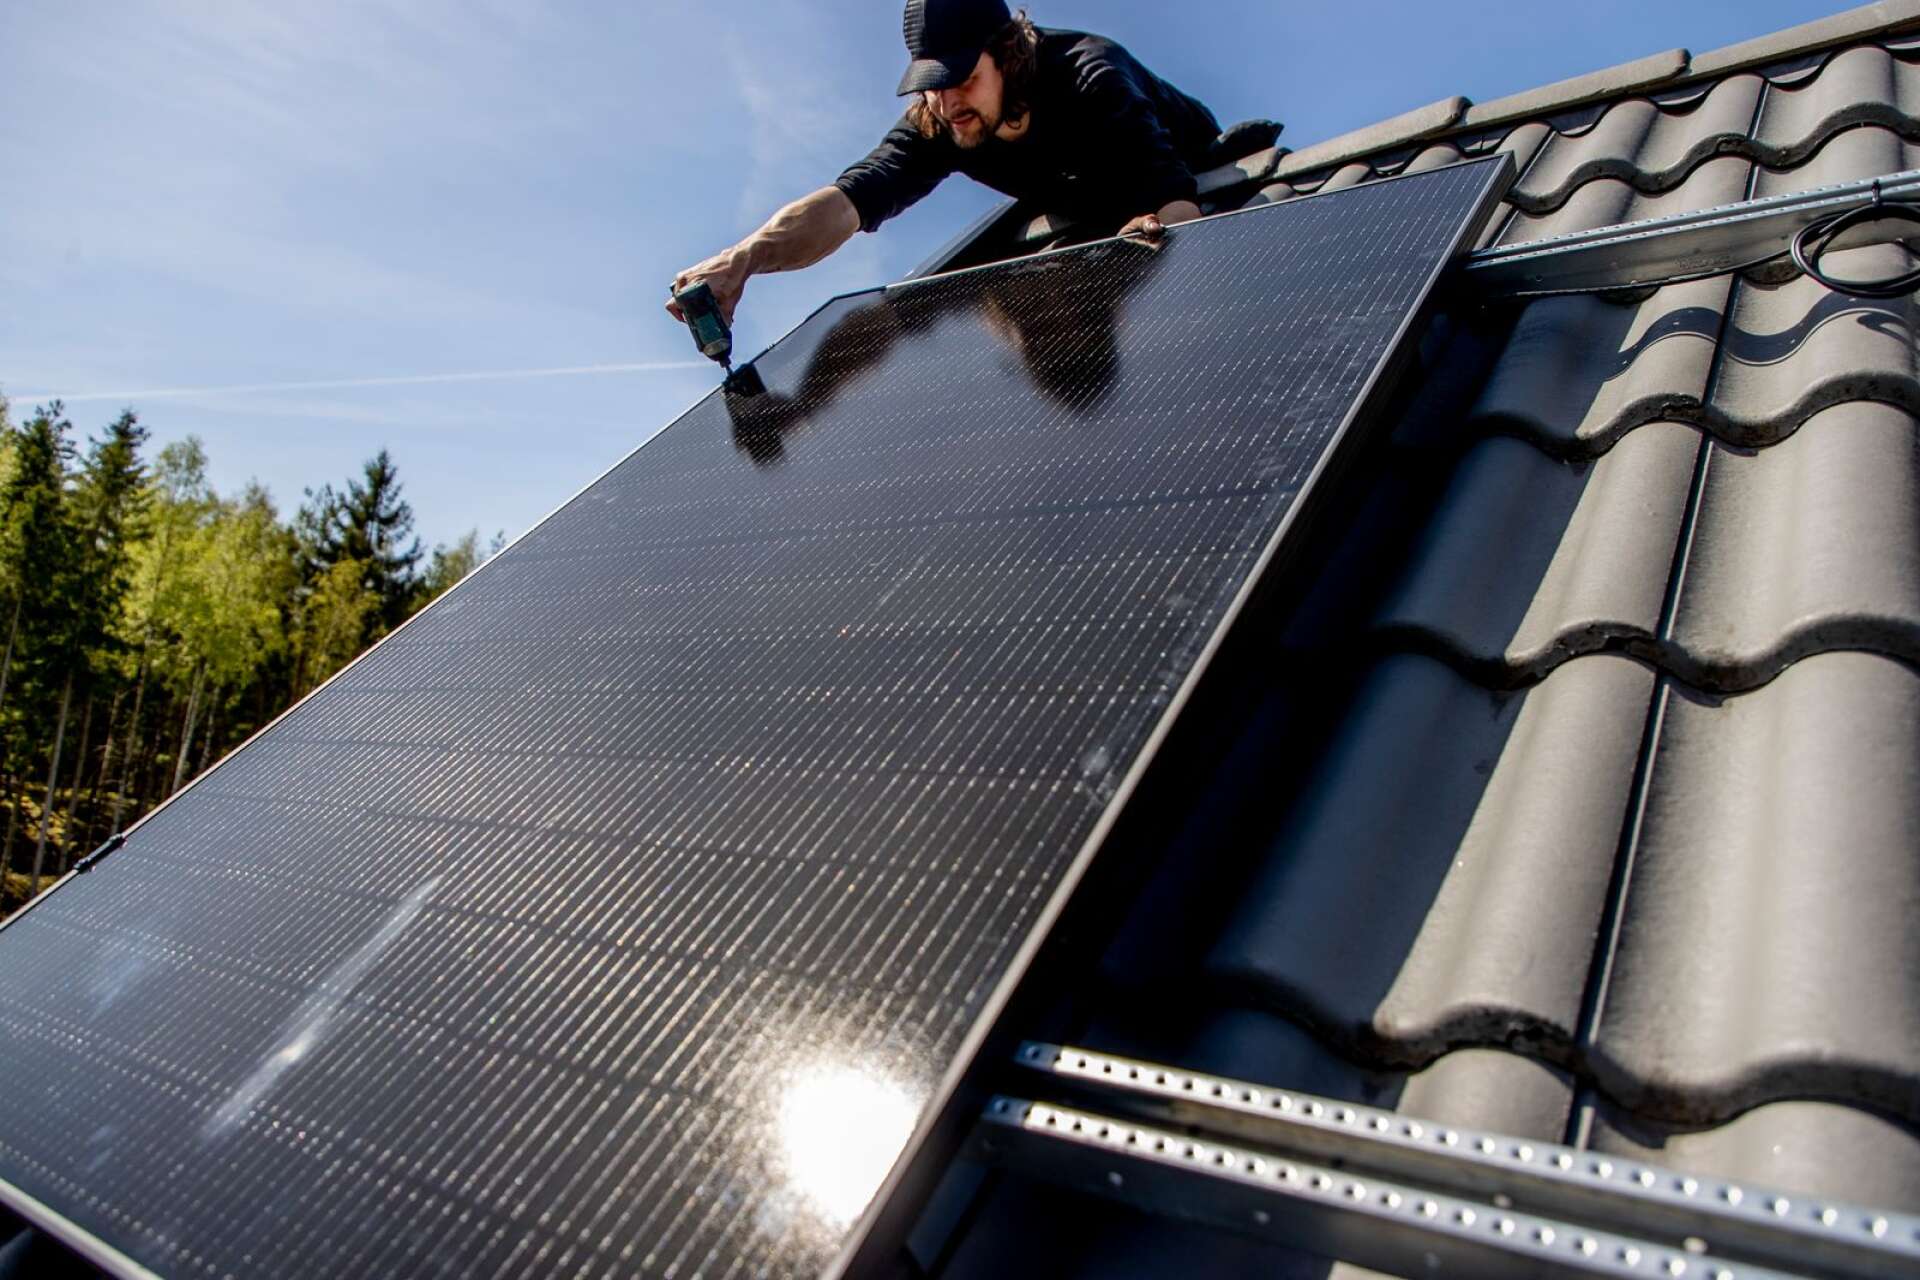 Allt fler hustak pryds med solceller, en installation som Timo rekommenderar att göra om man har möjlighet ekonomiskt.